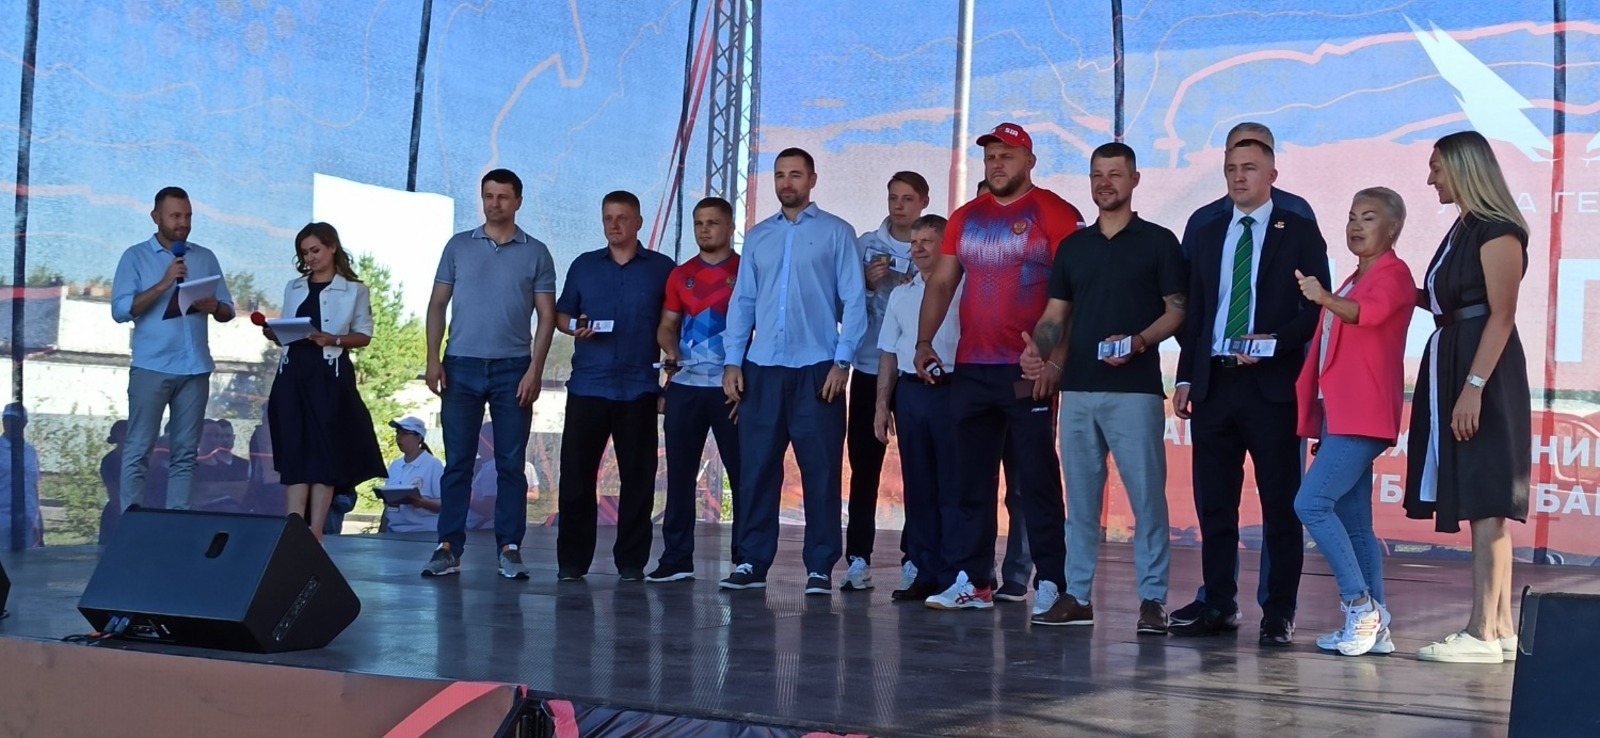 Во всем нужна сноровка, закалка, тренировка: День физкультурника в Башкирии встретили «Гонкой героев»